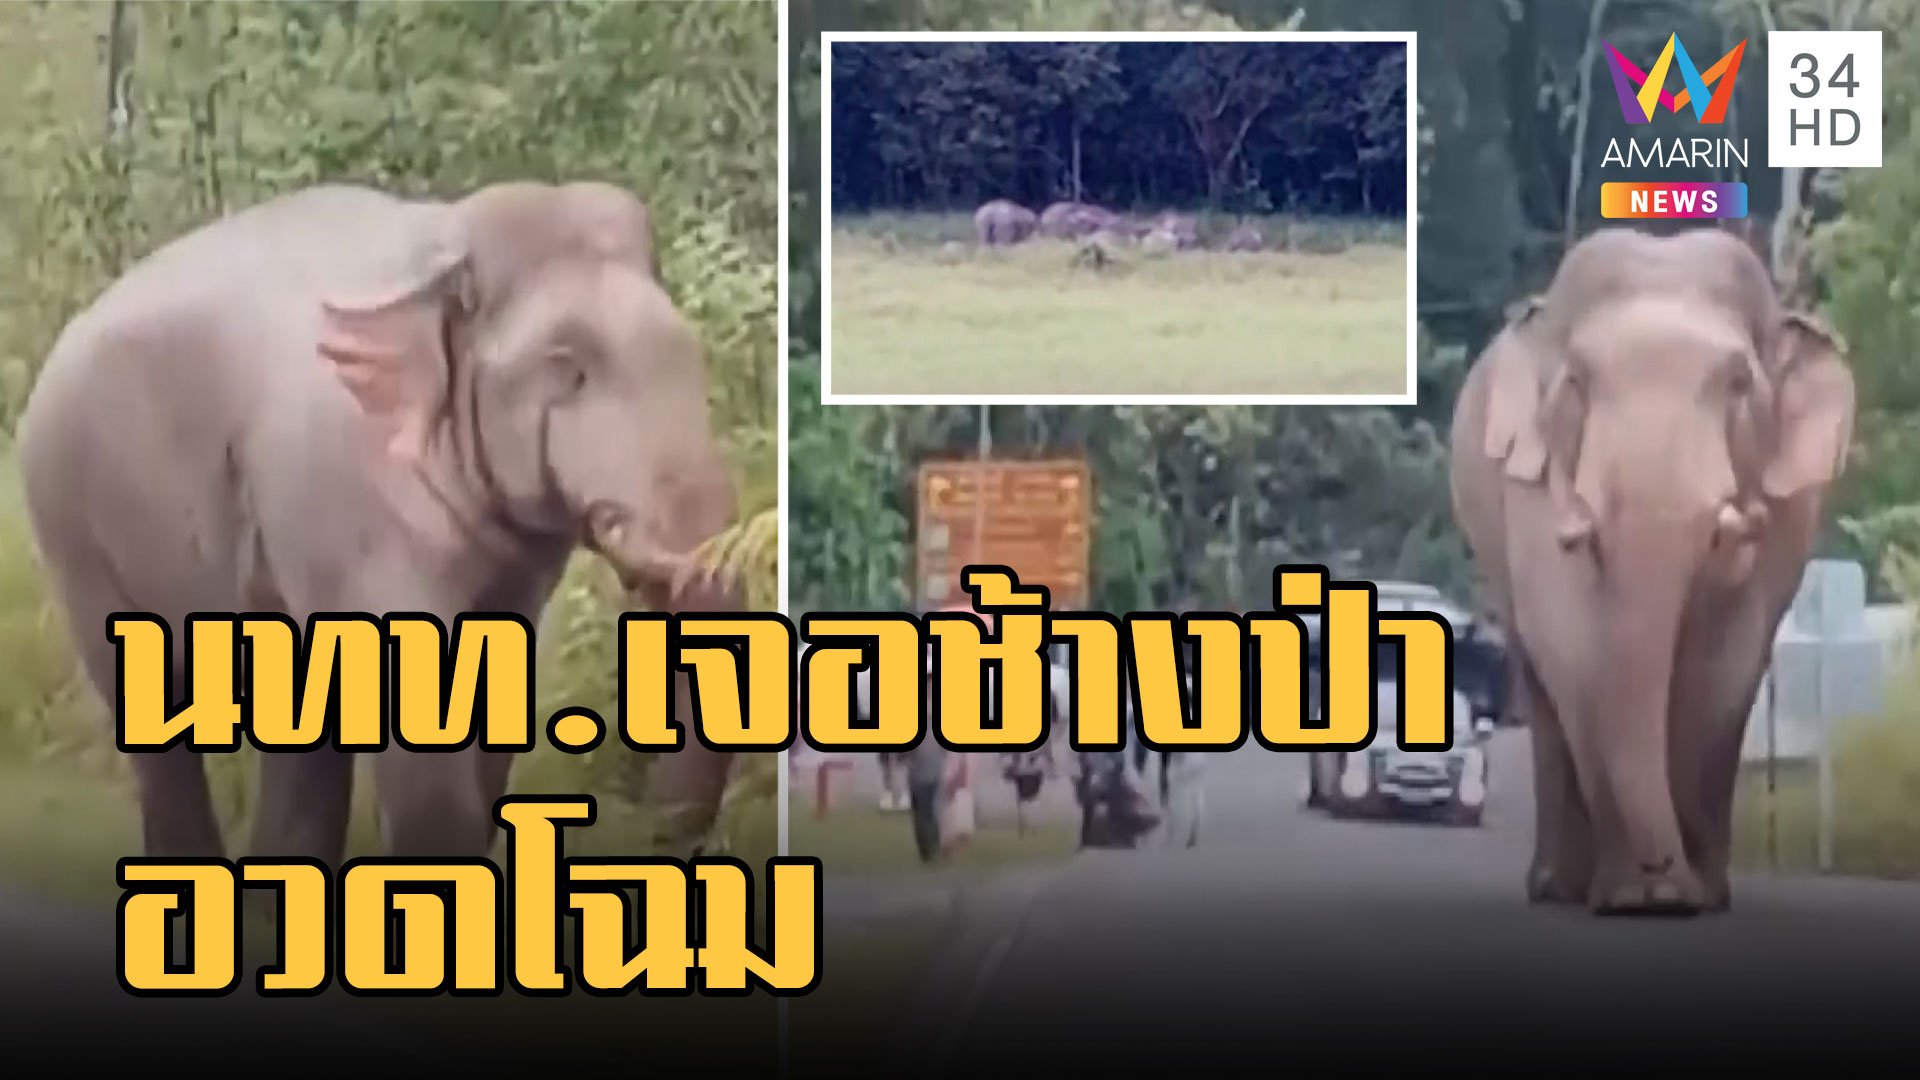 นักท่องเที่ยวตื่นตา! ช้างป่าเขาใหญ่เดินอวดโฉม แถมเจออีกโขลงมากินดินโป่ง | ข่าวอรุณอมรินทร์ | 24 ก.ย. 65 | AMARIN TVHD34